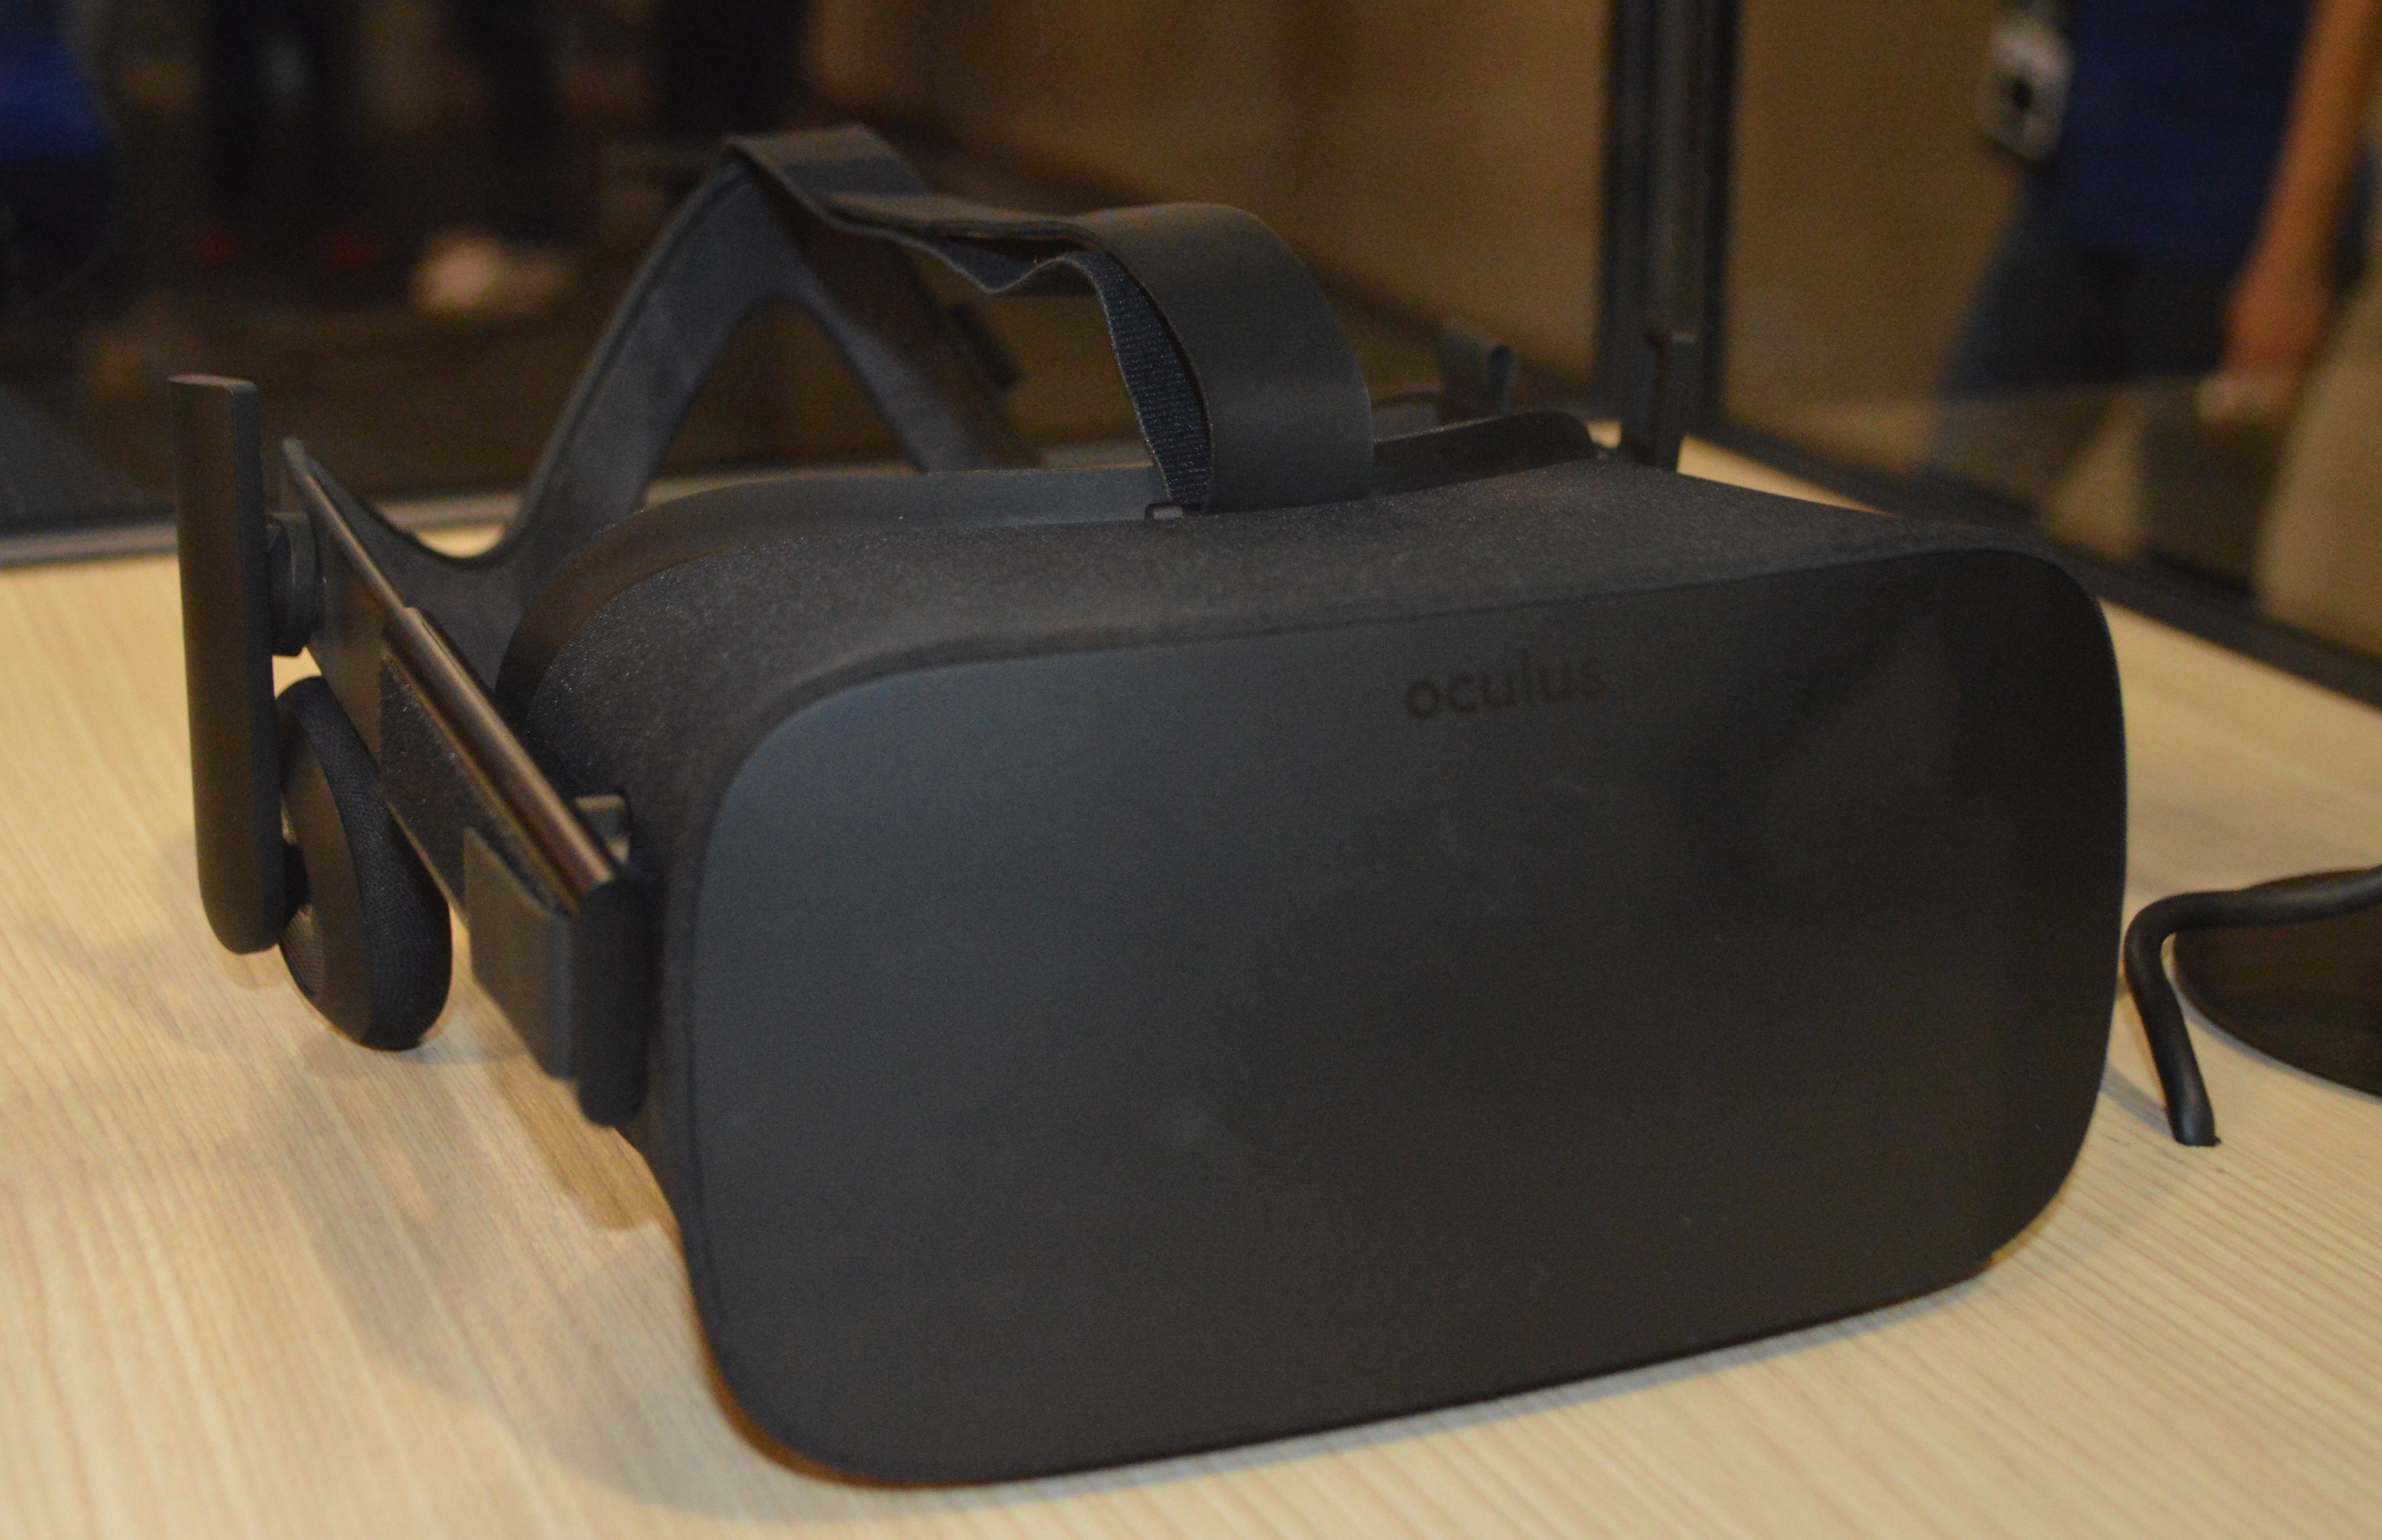 Oculus Rift vs HTC Vive comparison